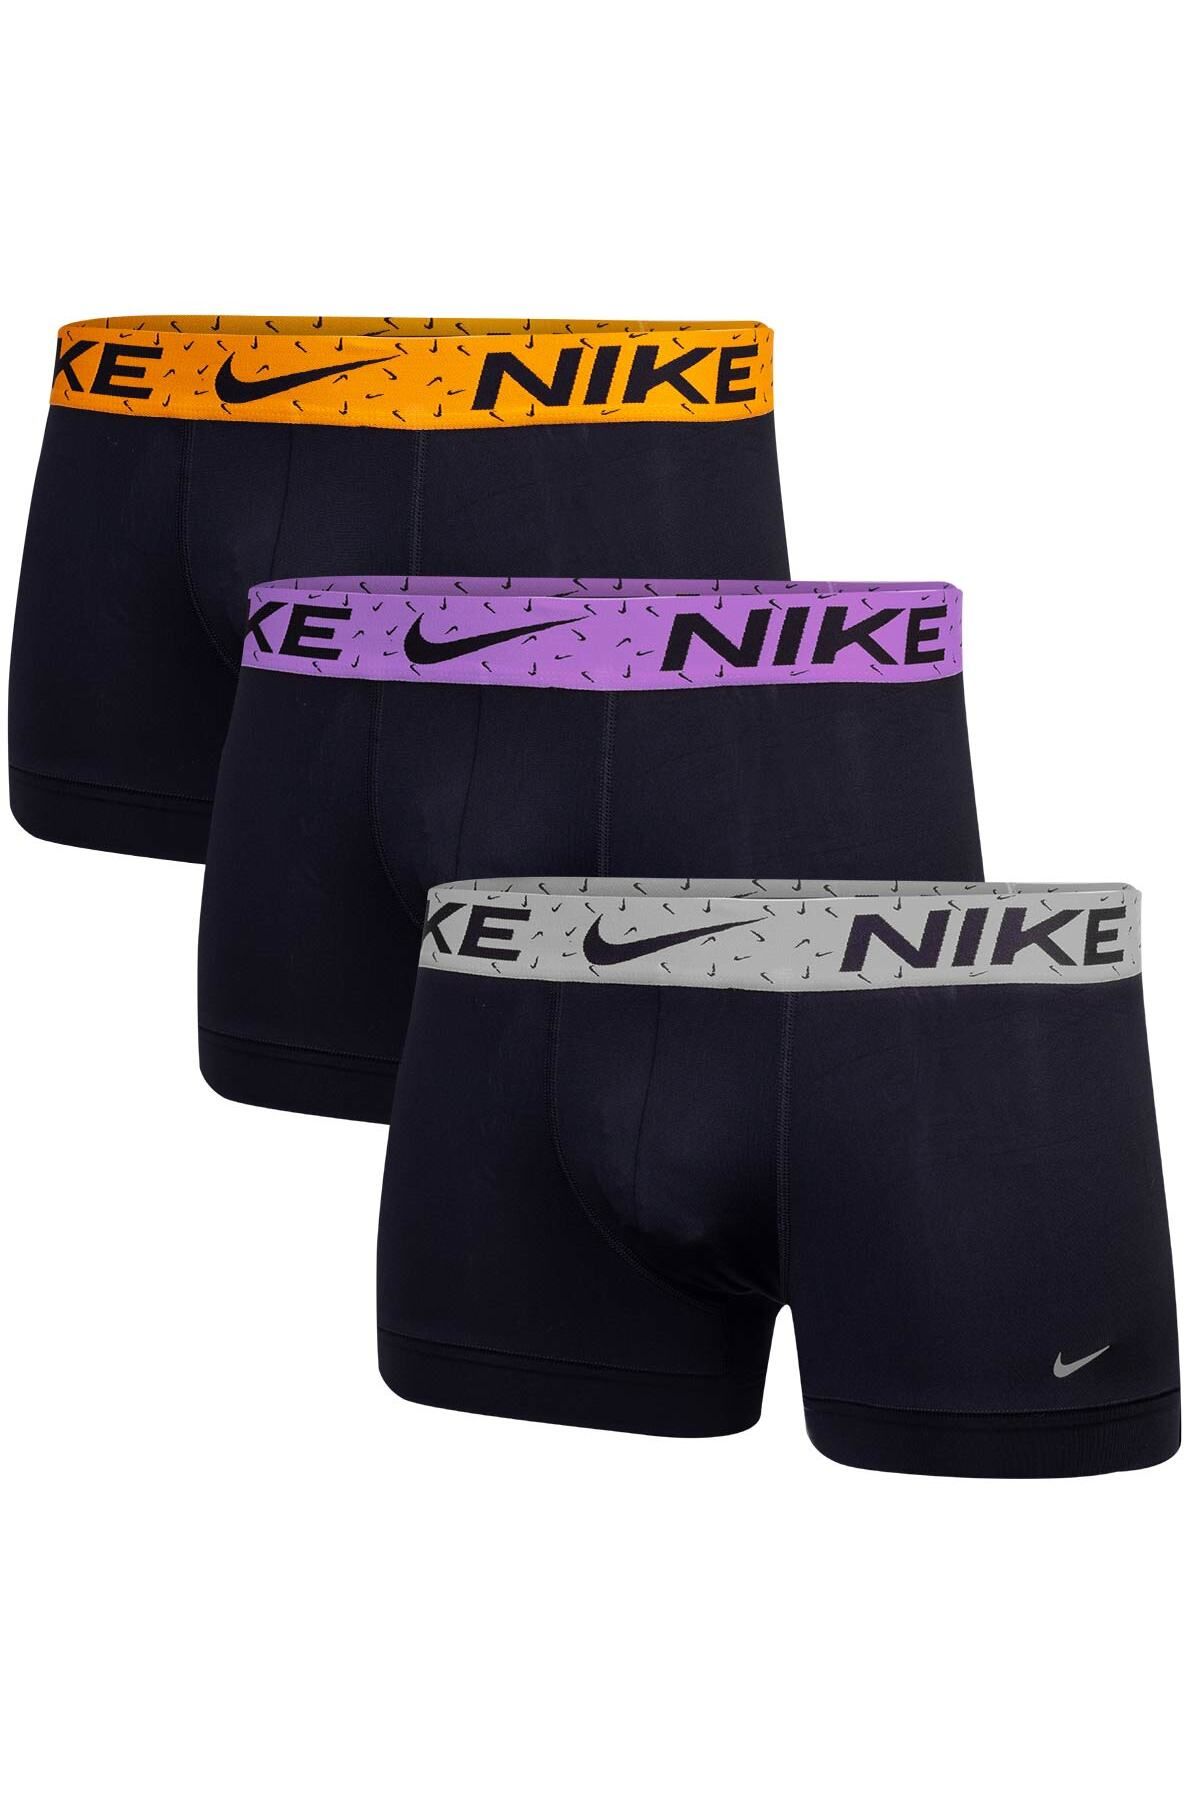 Nike Erkek Marka Logolu Elastik Bantlı Günlük Kullanıma Uygun Siyah Boxer 0000Ke1156-2Nd